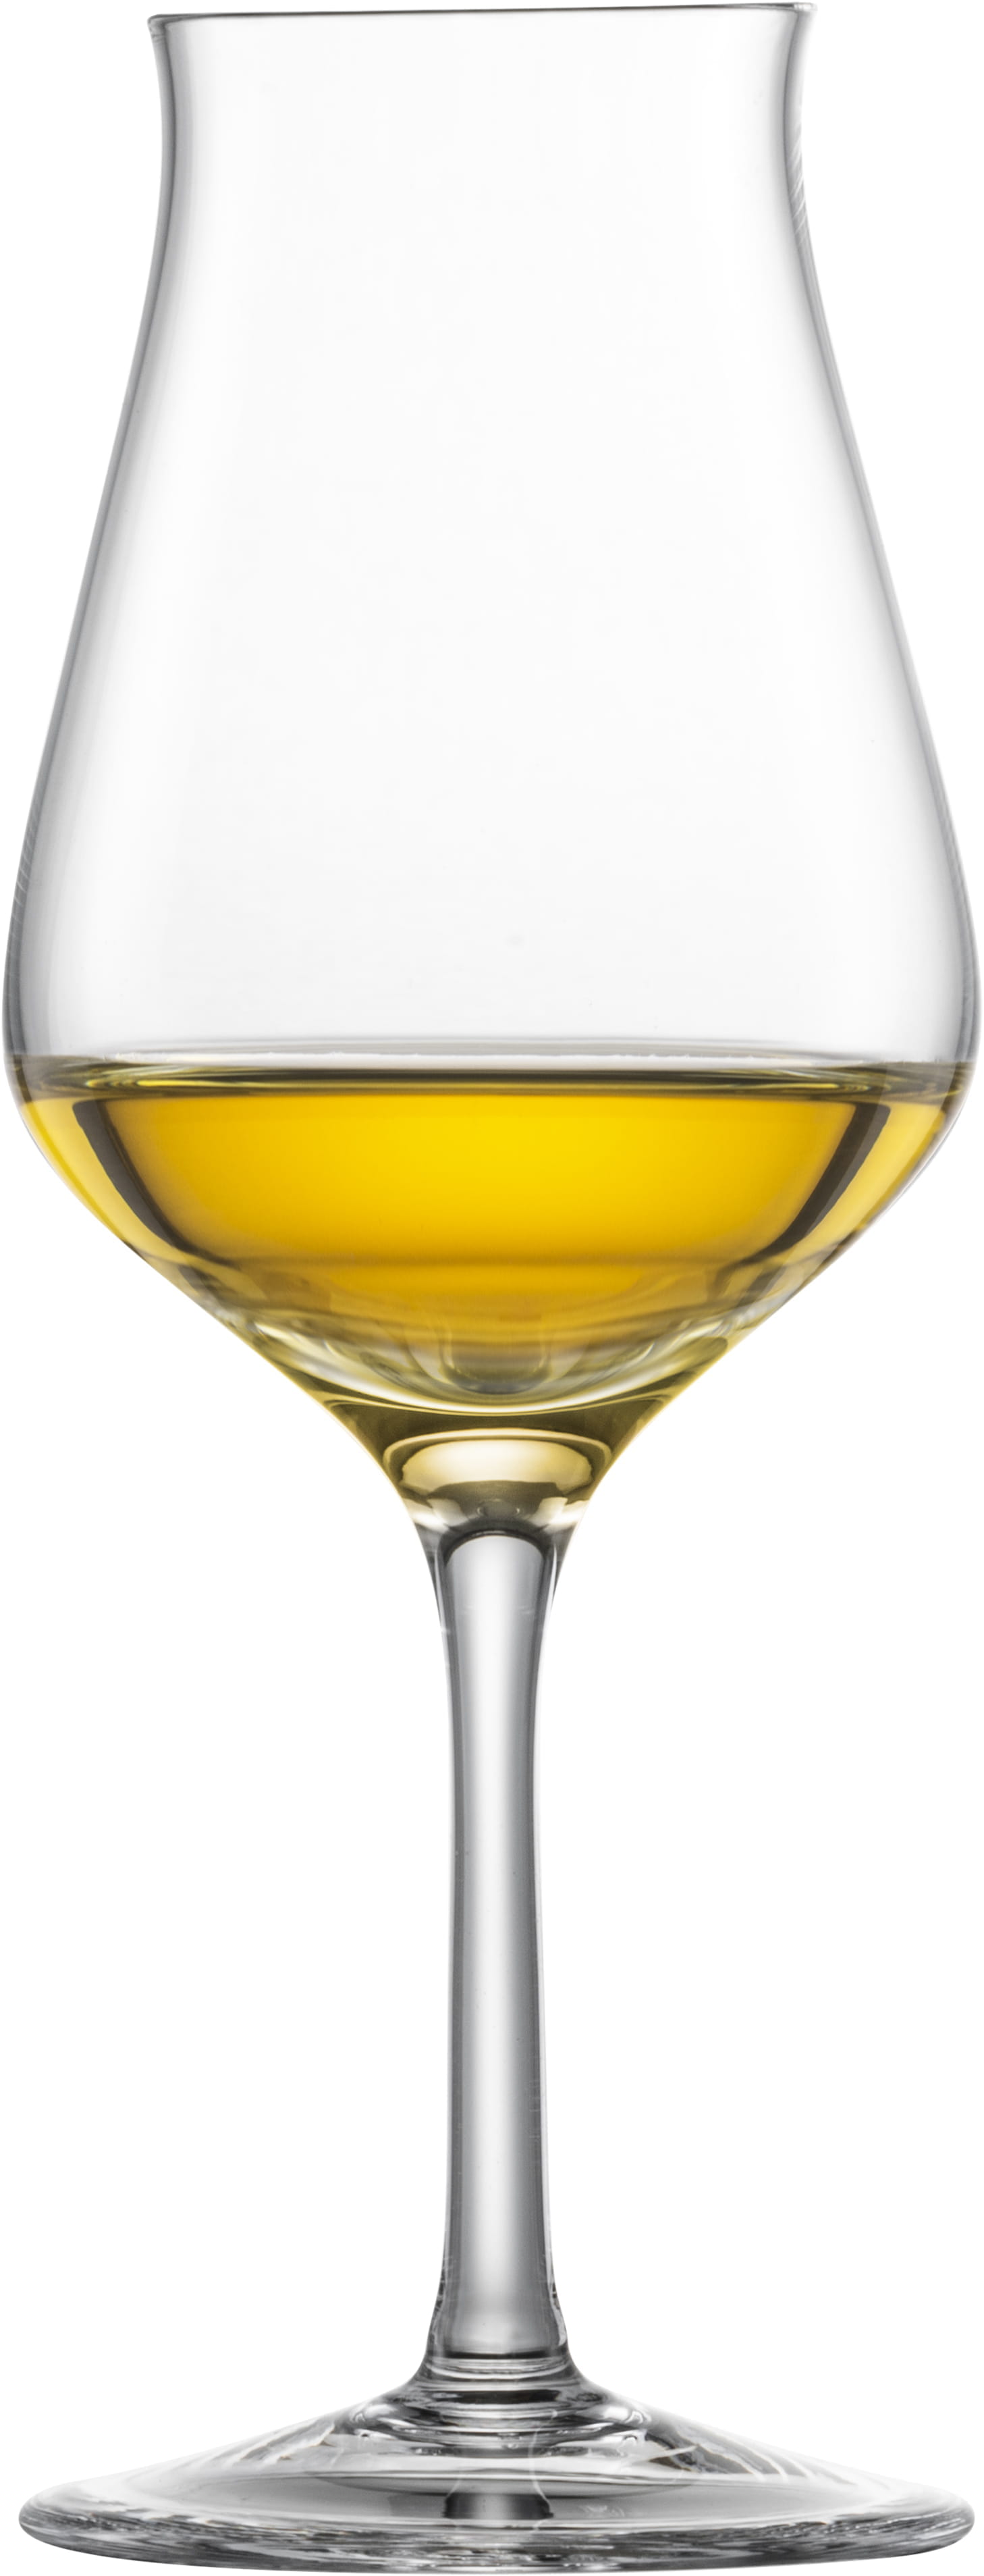 Eisch Glas Jeunesse Malt-Whisky-Set 514/900  2 Stck. in Geschenkröhre